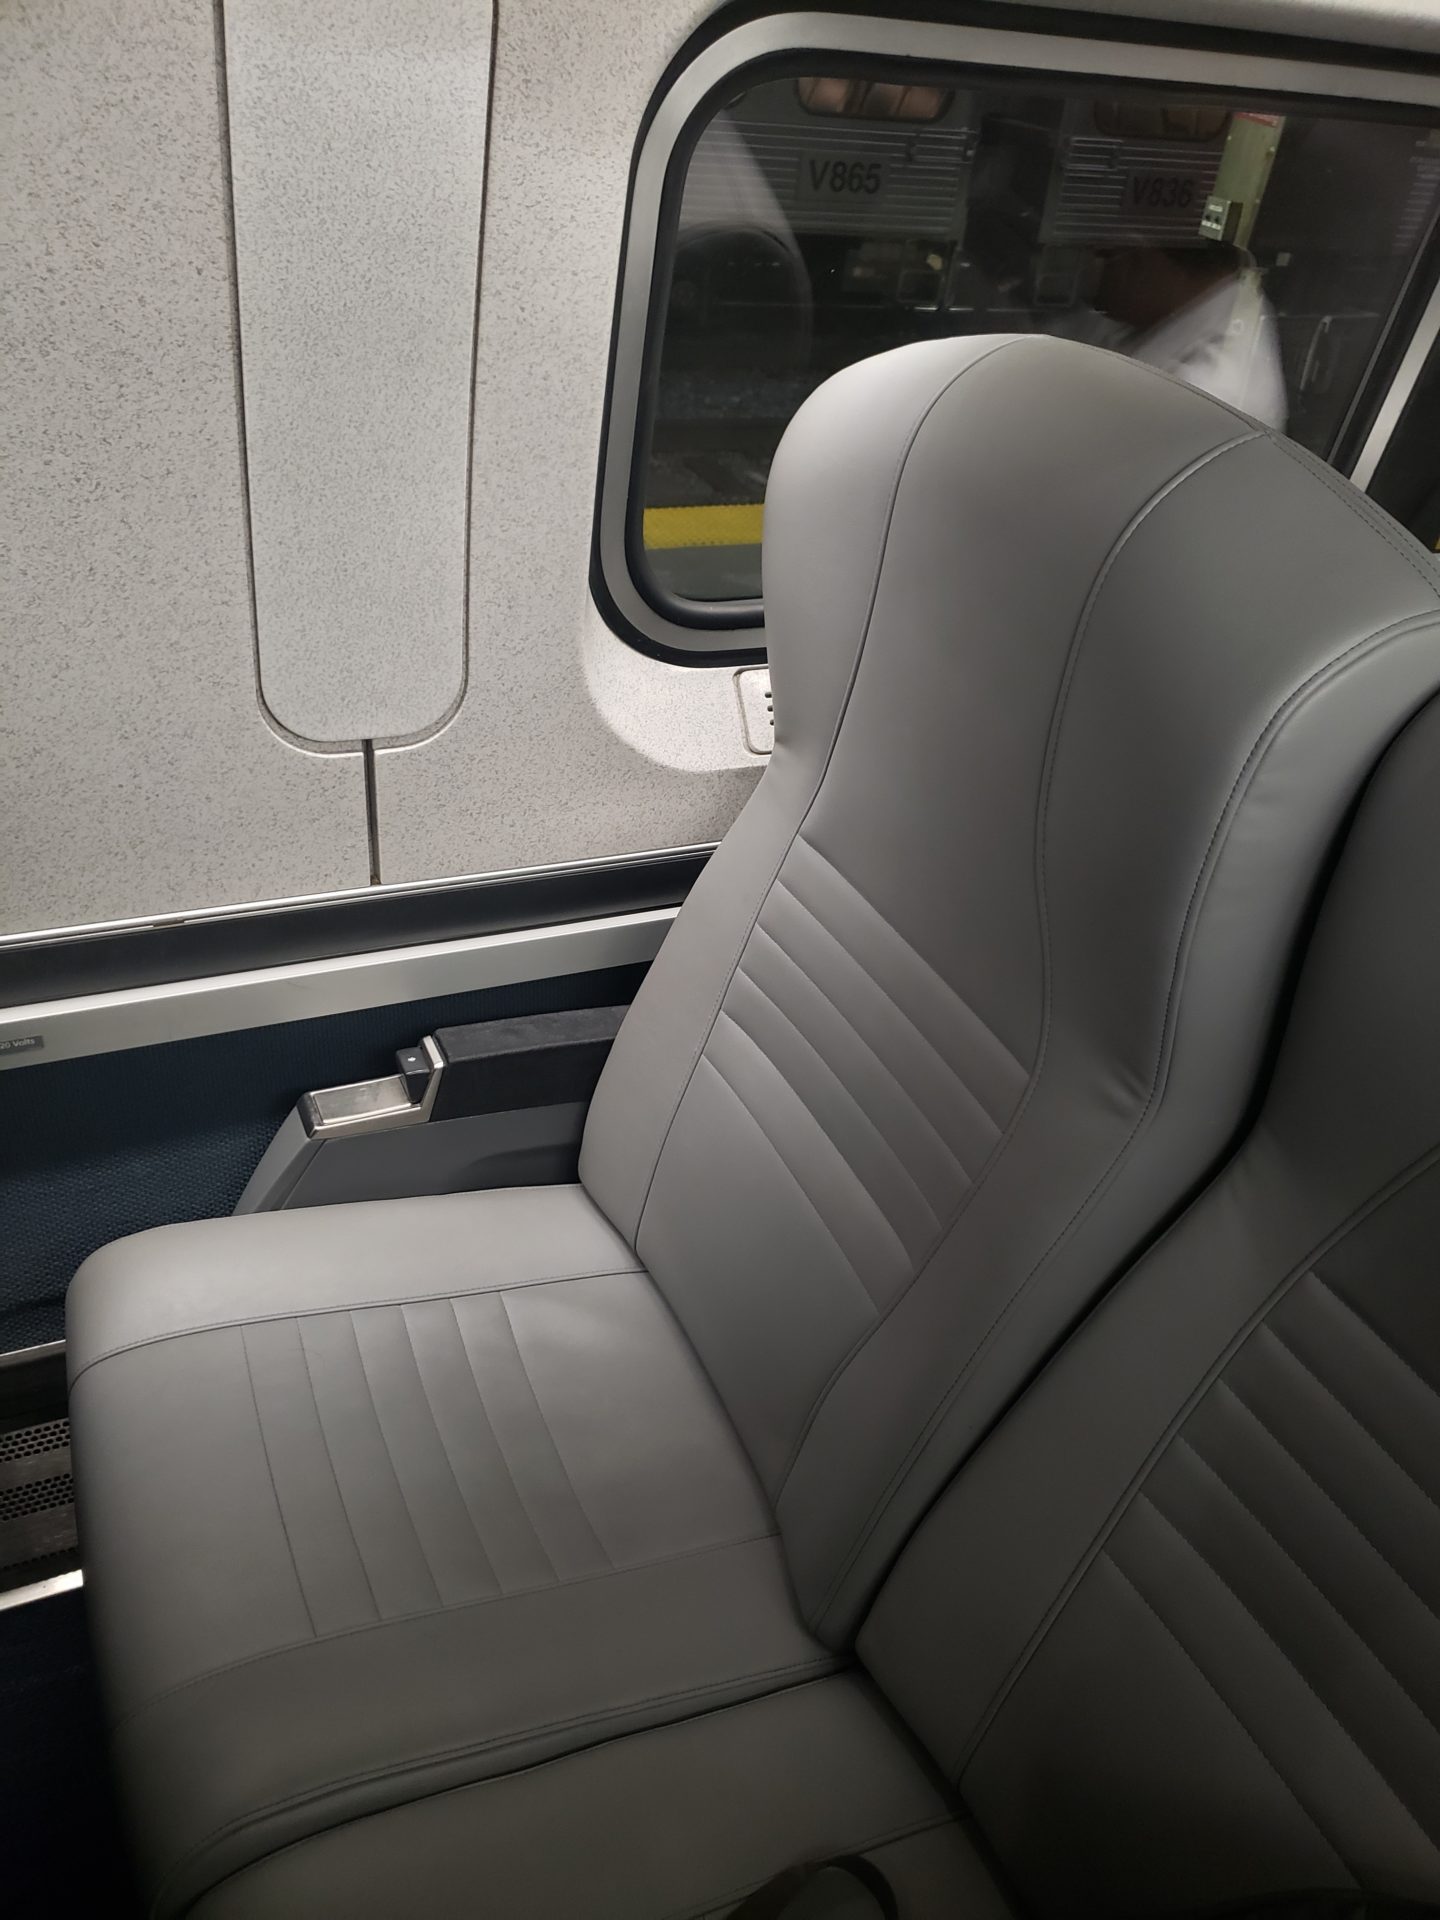 a grey seat in a train